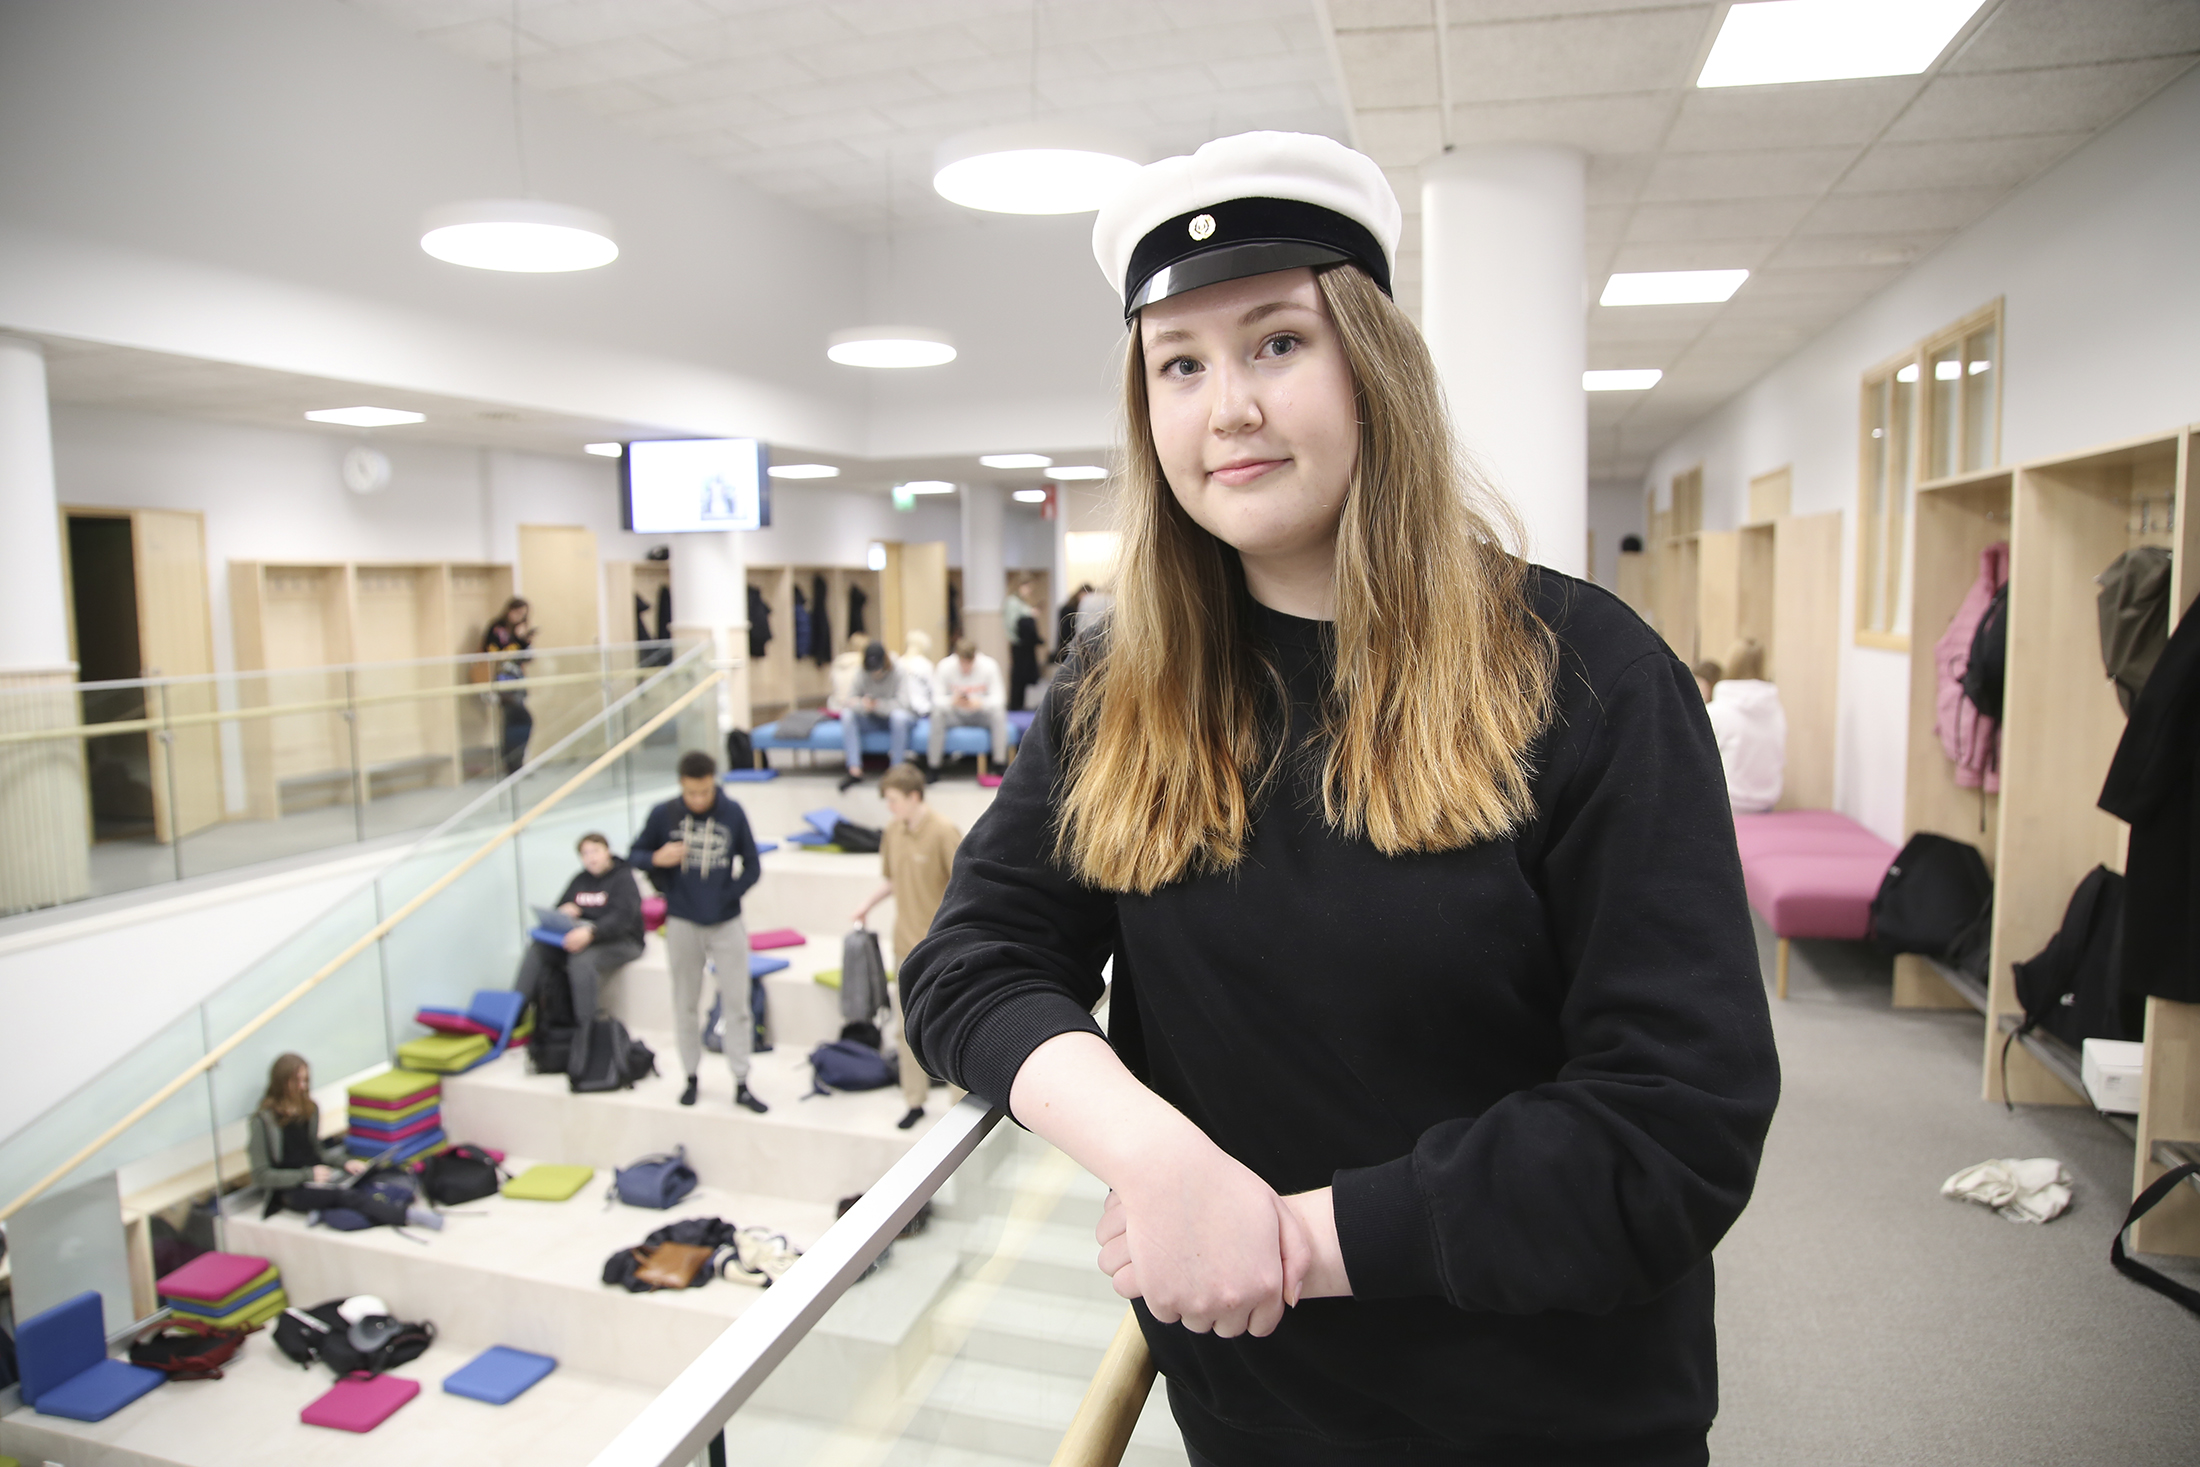 Petra Pitkänen vaihtoi ensimmäisen lukiovuoden jälkeen koulua Tampereelta Pirkkalaan: ”On tosi kiva, että opettajat tuntevat täällä kaikki” – Nyt hän valmistuu huippuarvosanoin